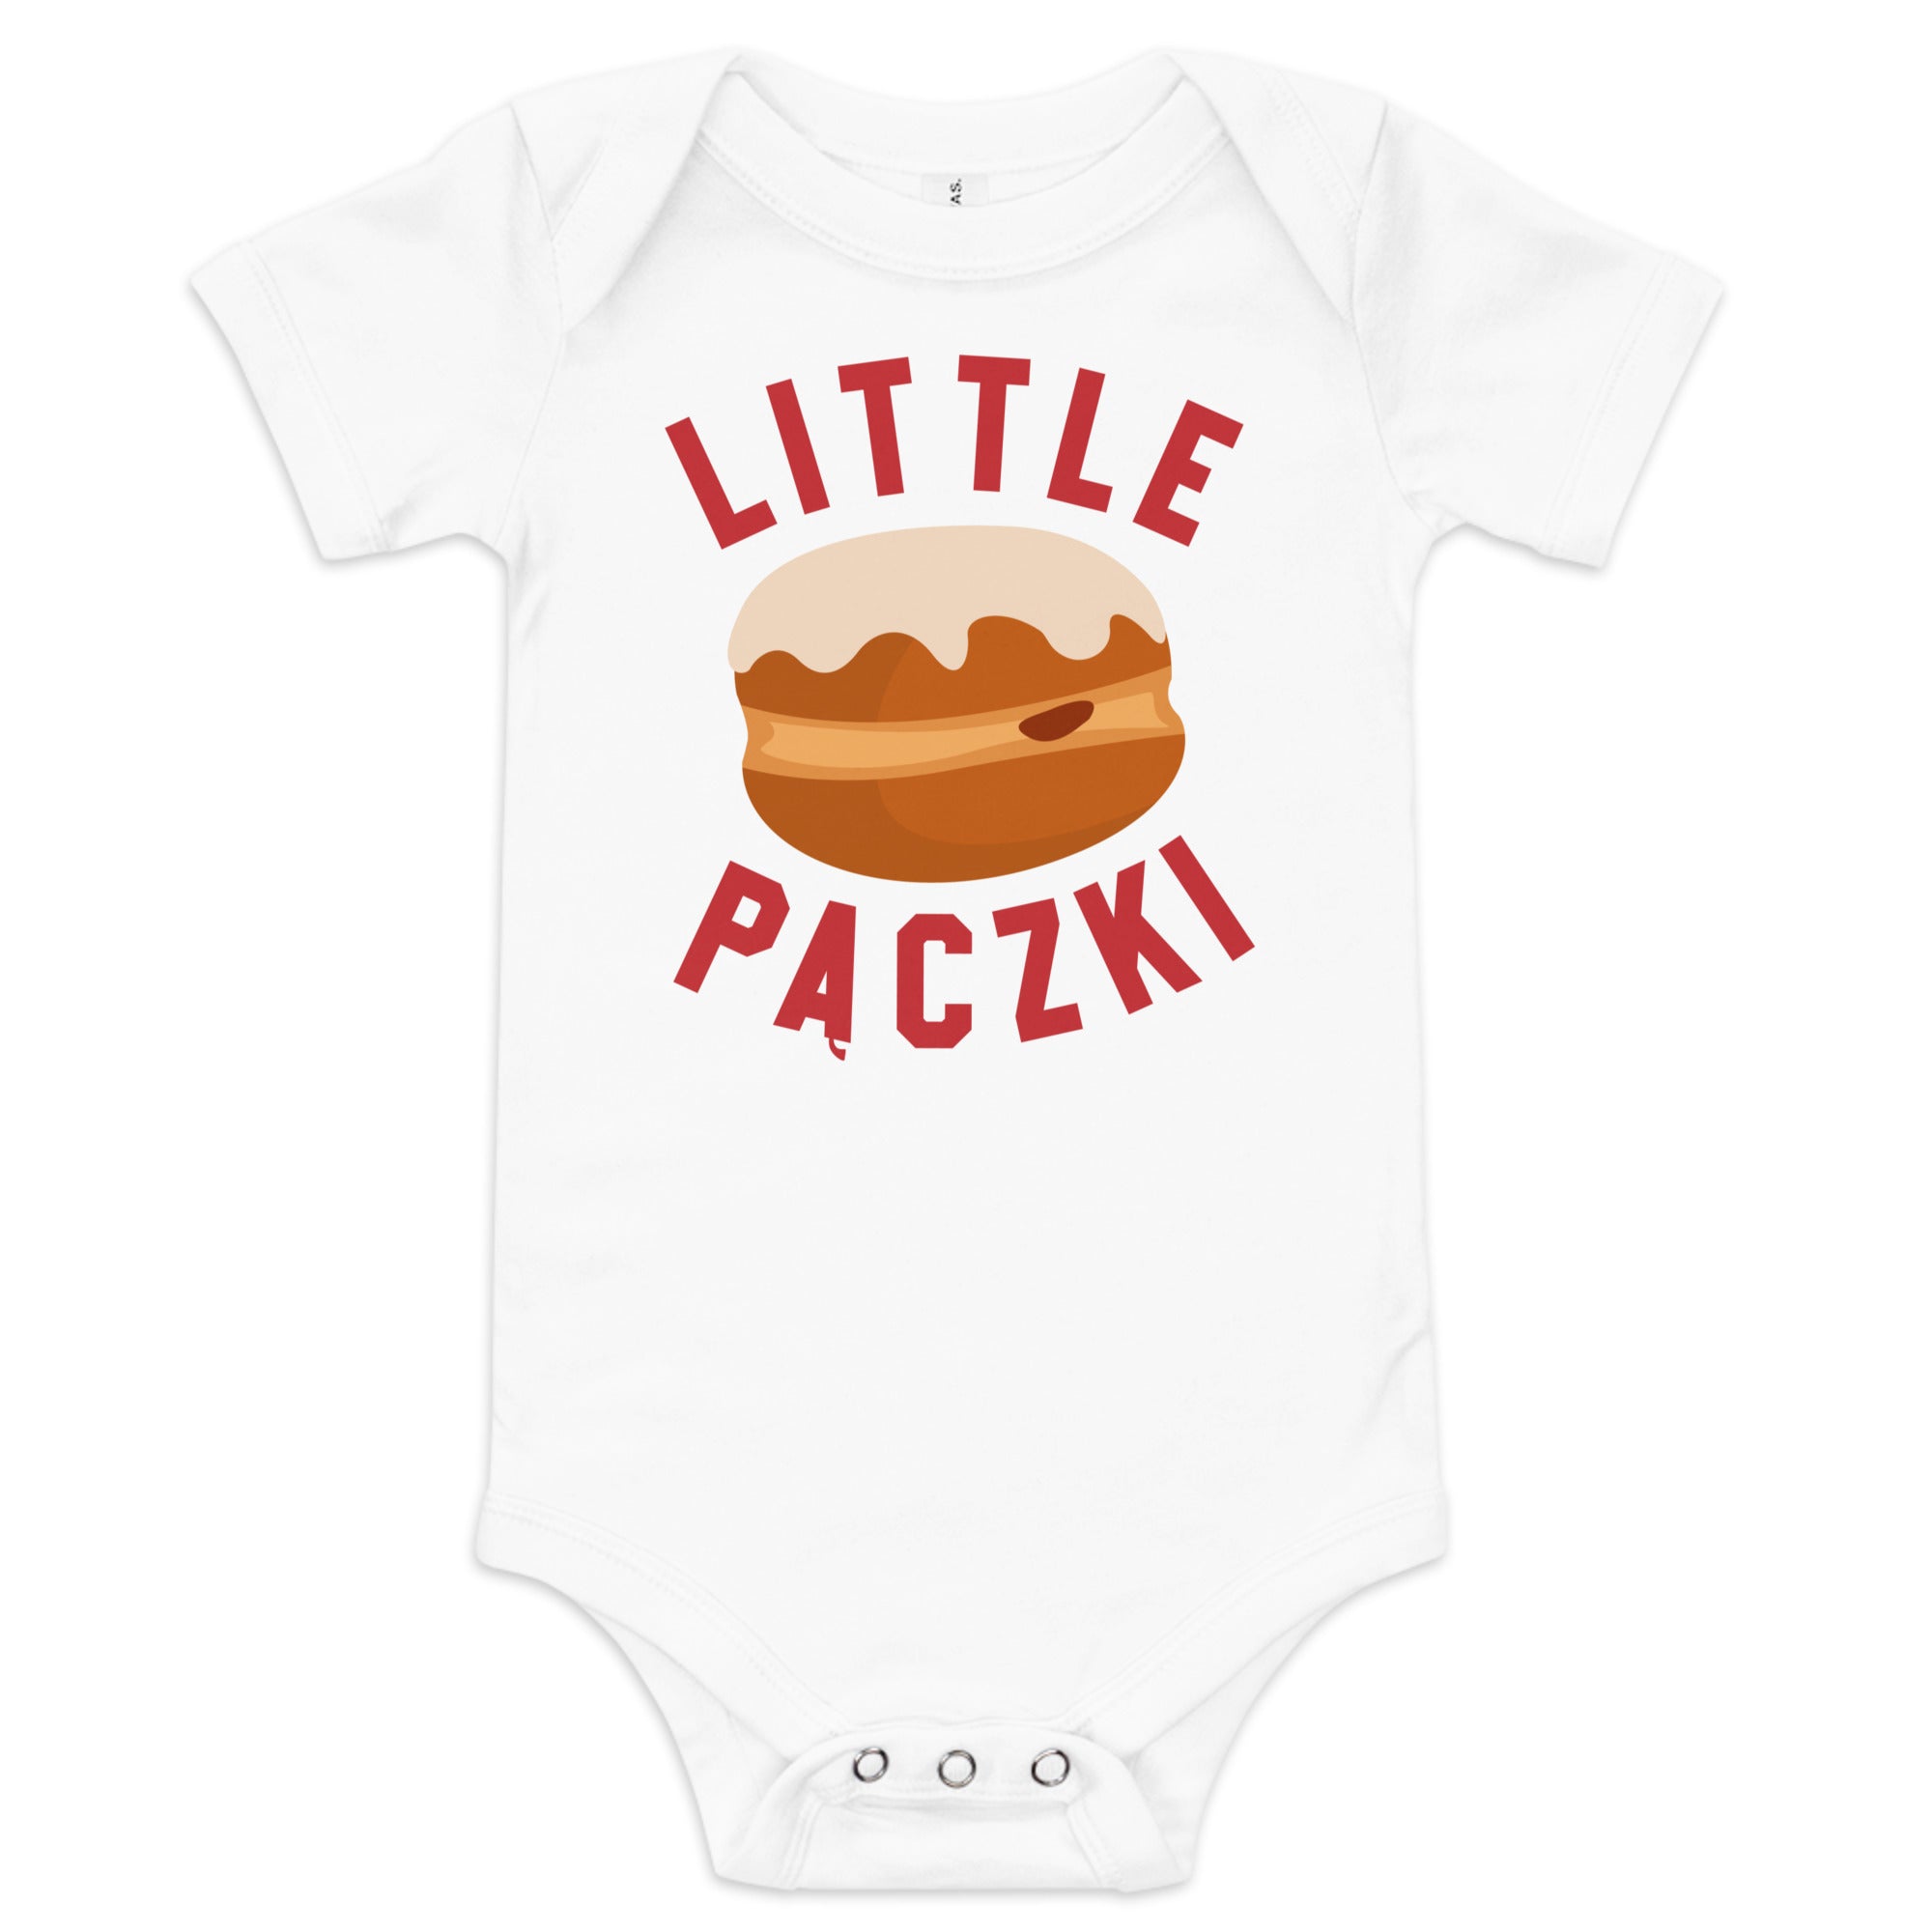 Little Paczki - Baby Onsie - Red / White  3-6m  